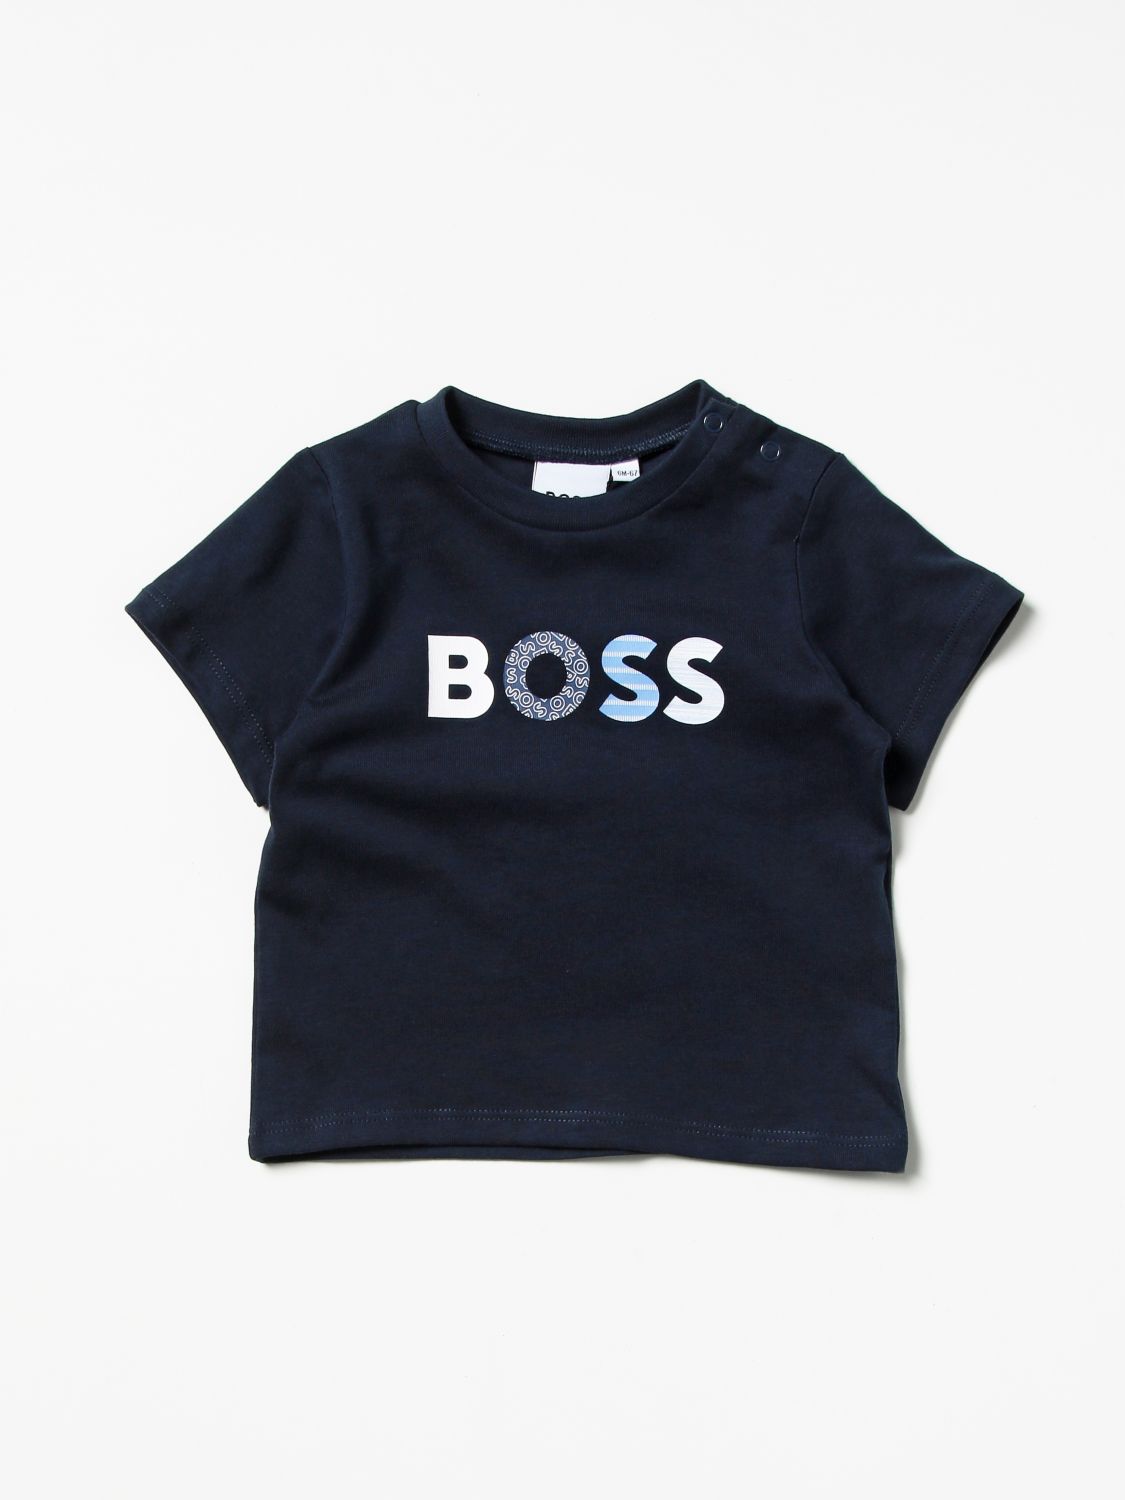 T恤 Hugo Boss: T恤 儿童 Hugo Boss 海军蓝 1